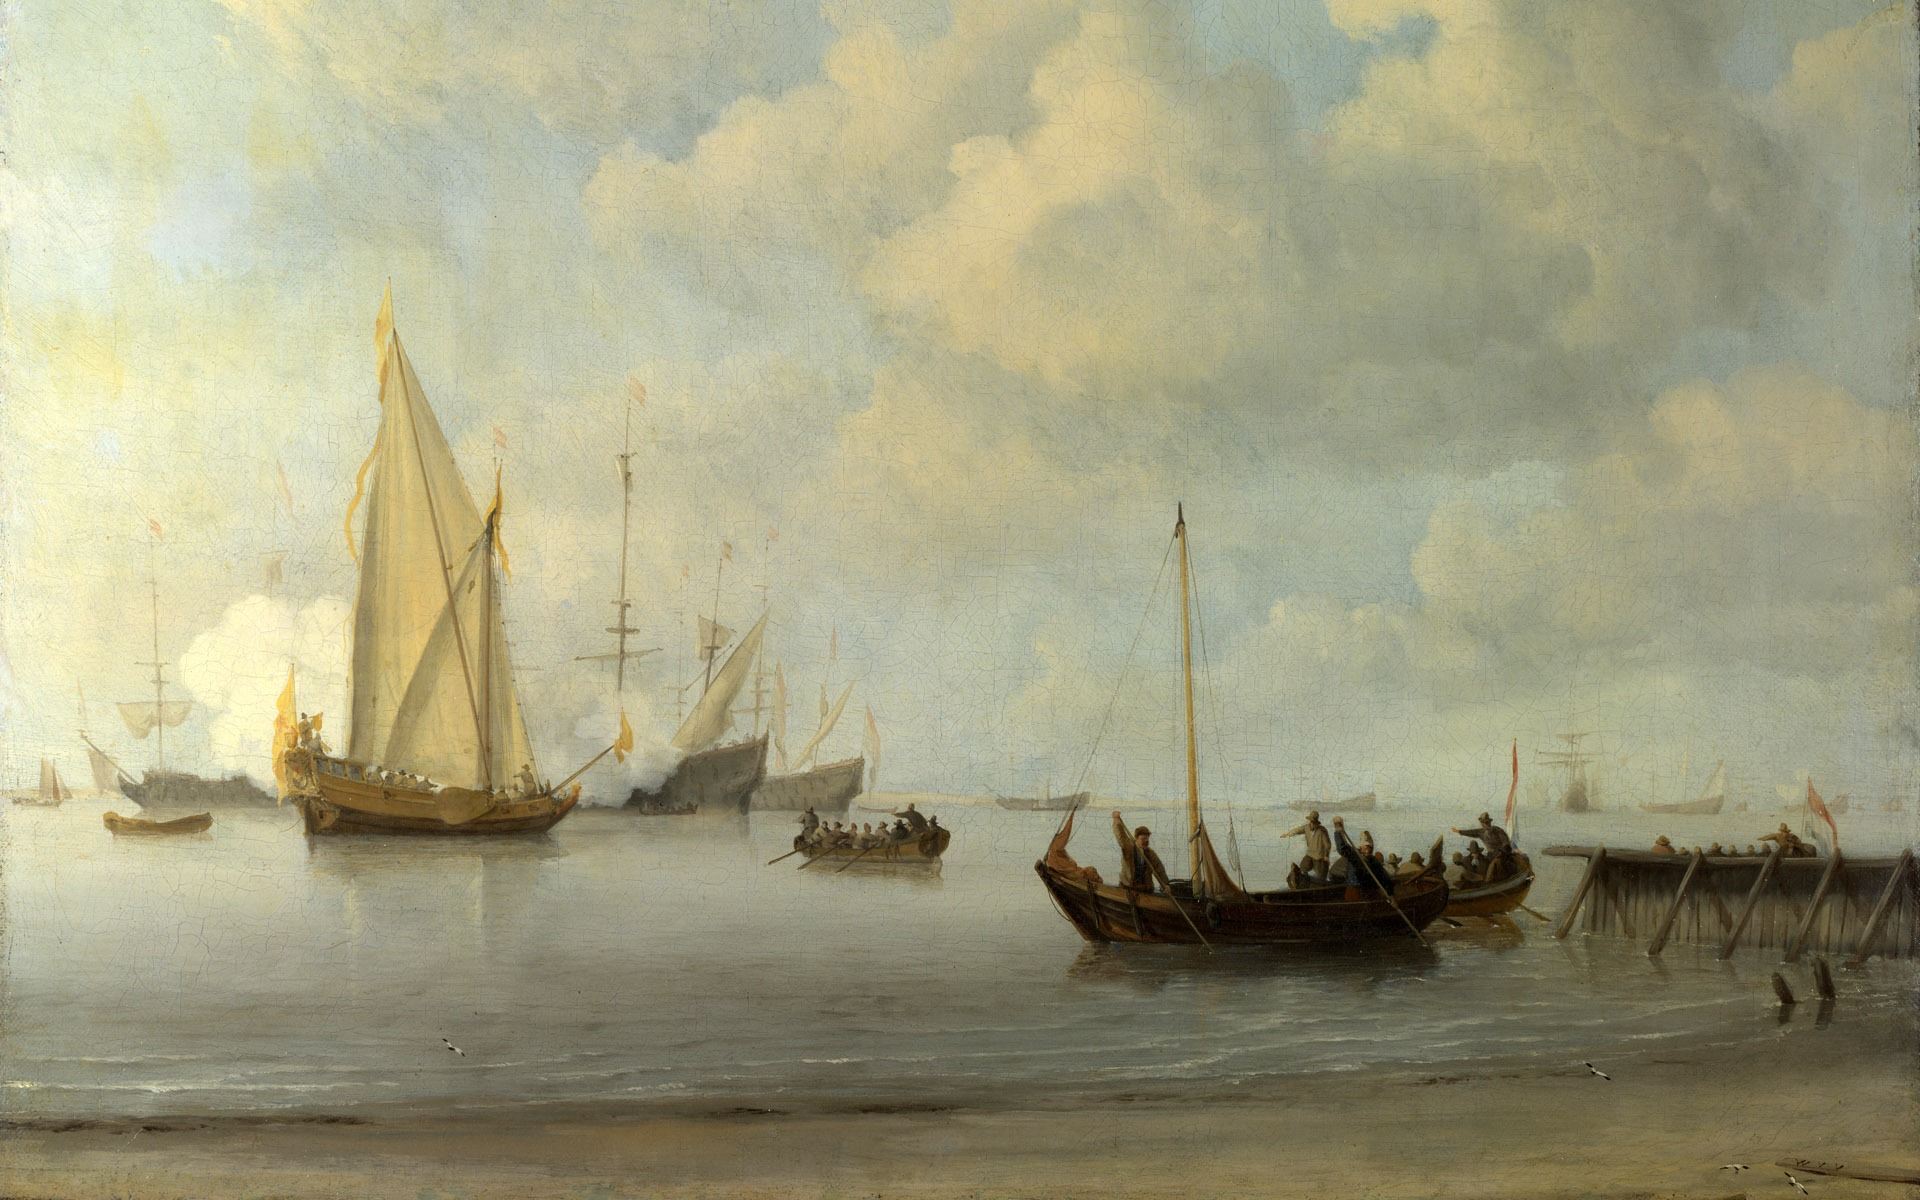 伦敦画廊帆船 壁纸(二)6 - 1920x1200